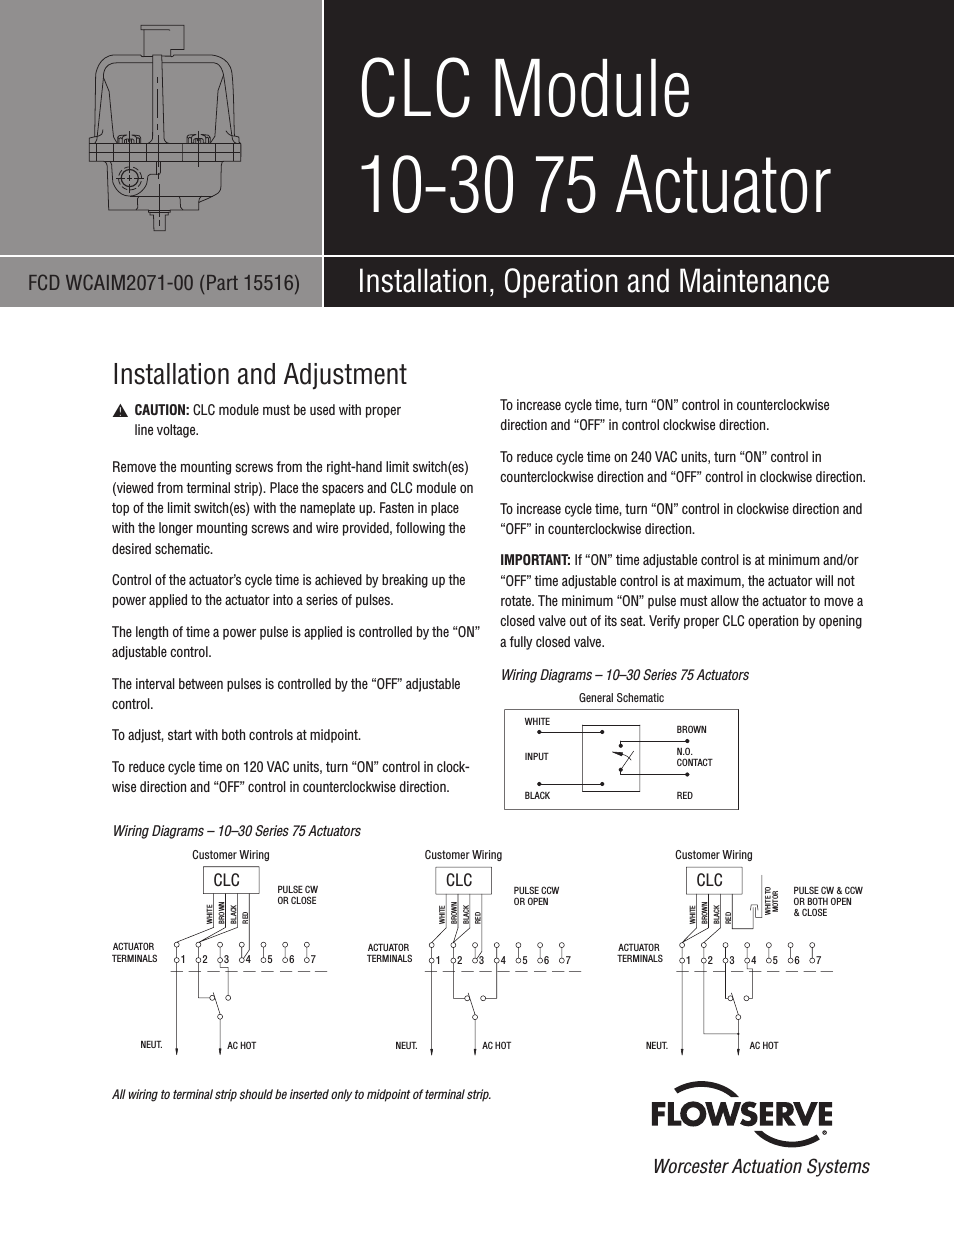 CLC Module 10-30 75 Actuator